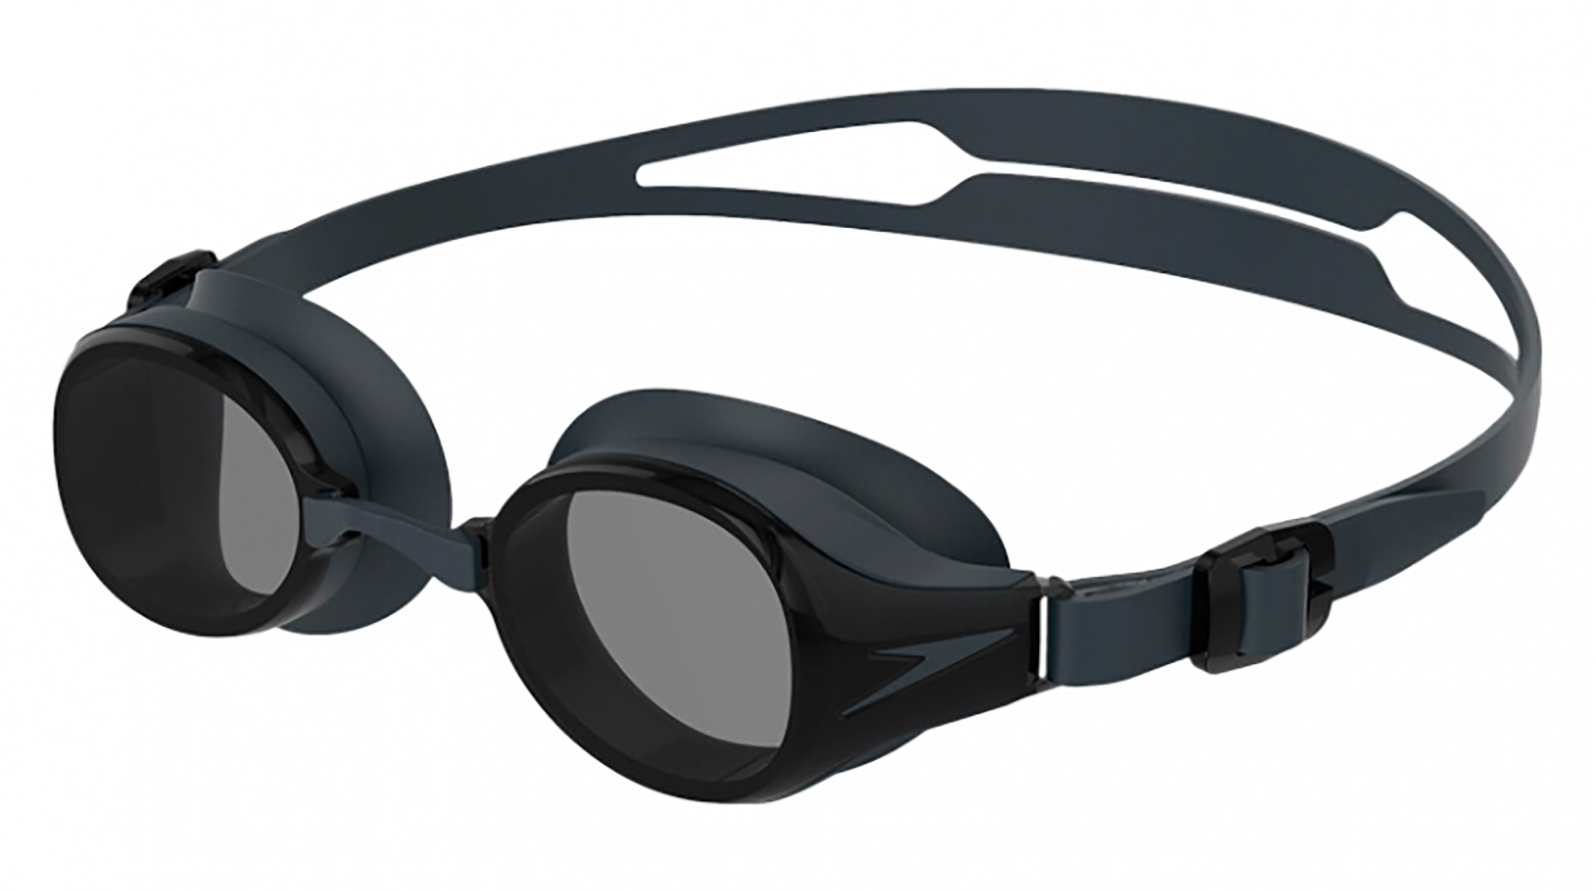 Speedo Очки для плавания Hydropure Optical F808 -3,0 grand voyage насадка на очки для водителя с желтыми линзами 02c1